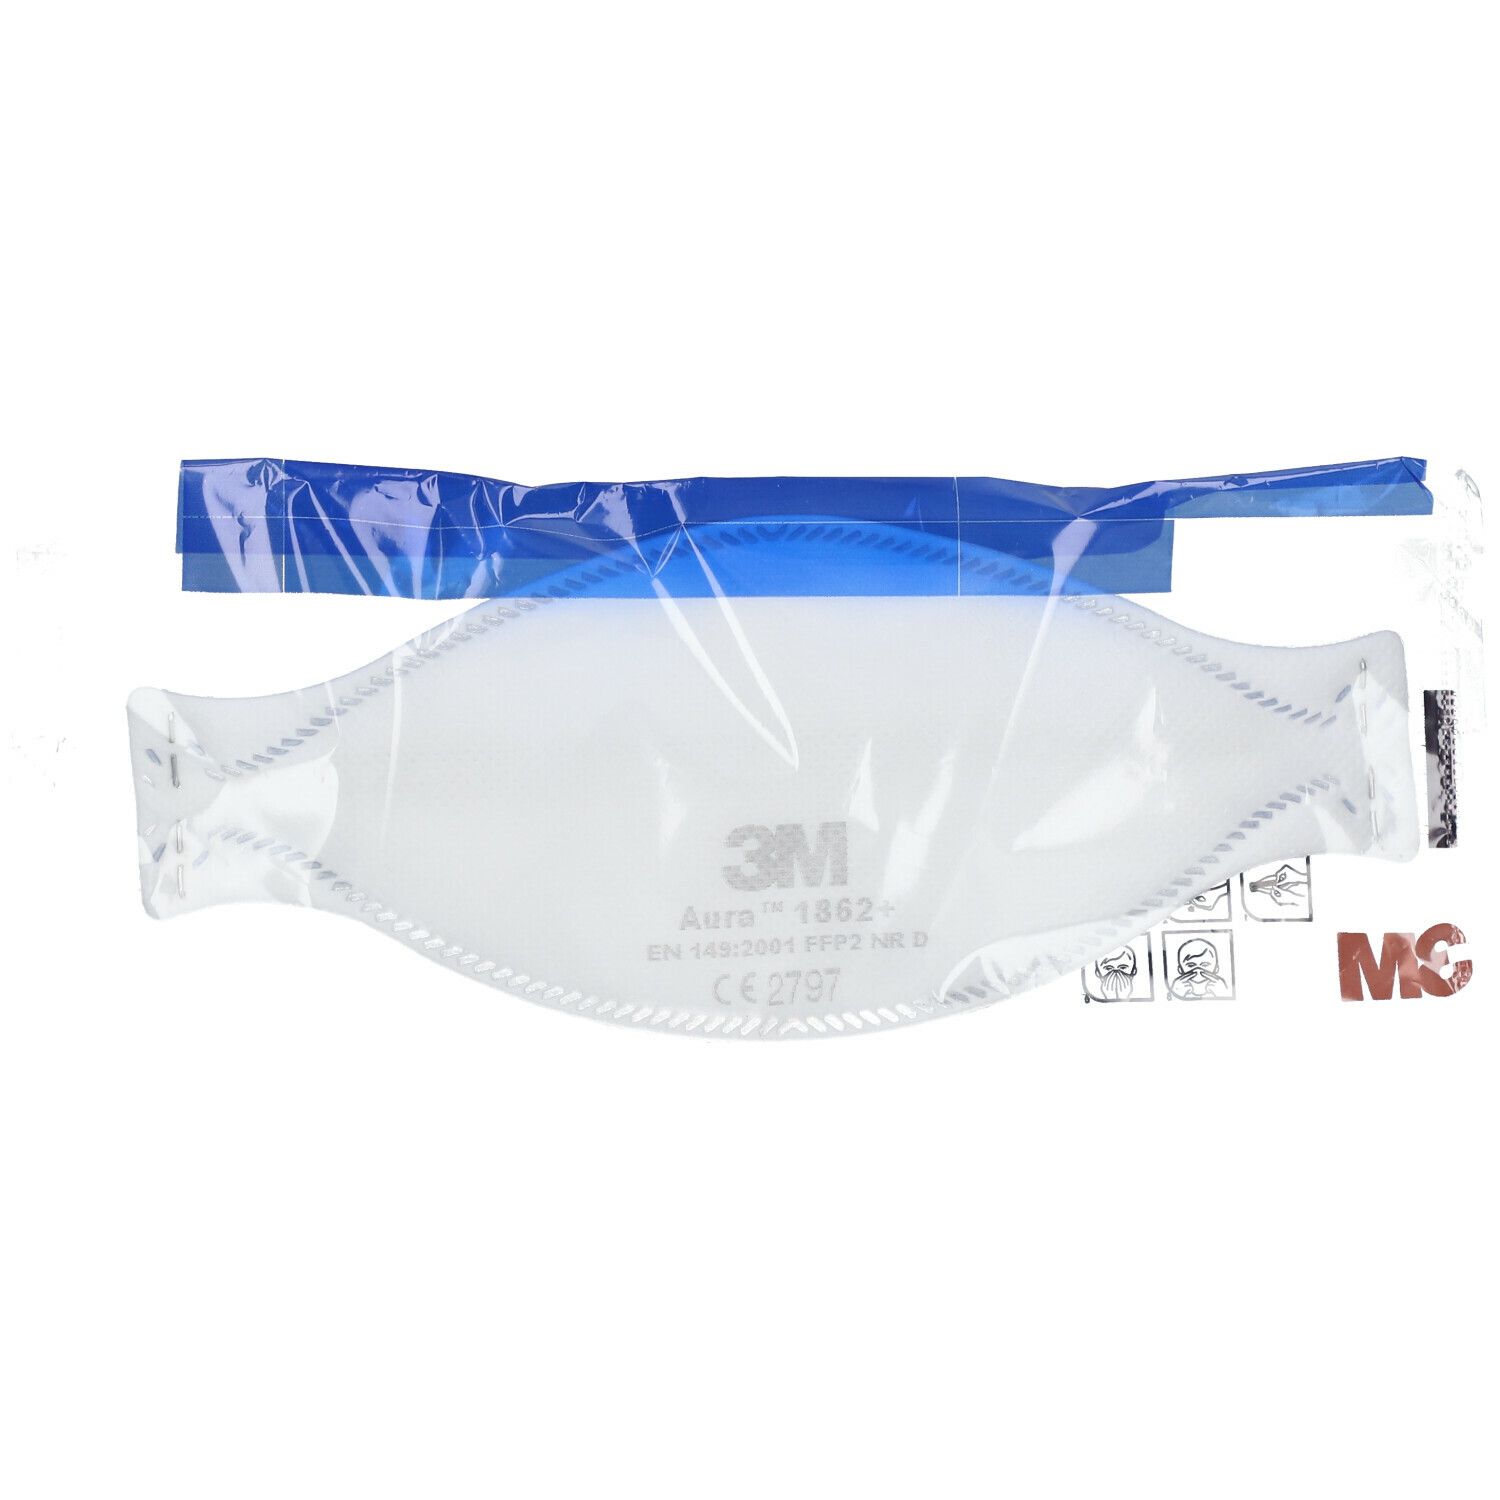 3M™ Masques de protection respiratoire Ffp2 sans valve 1862+